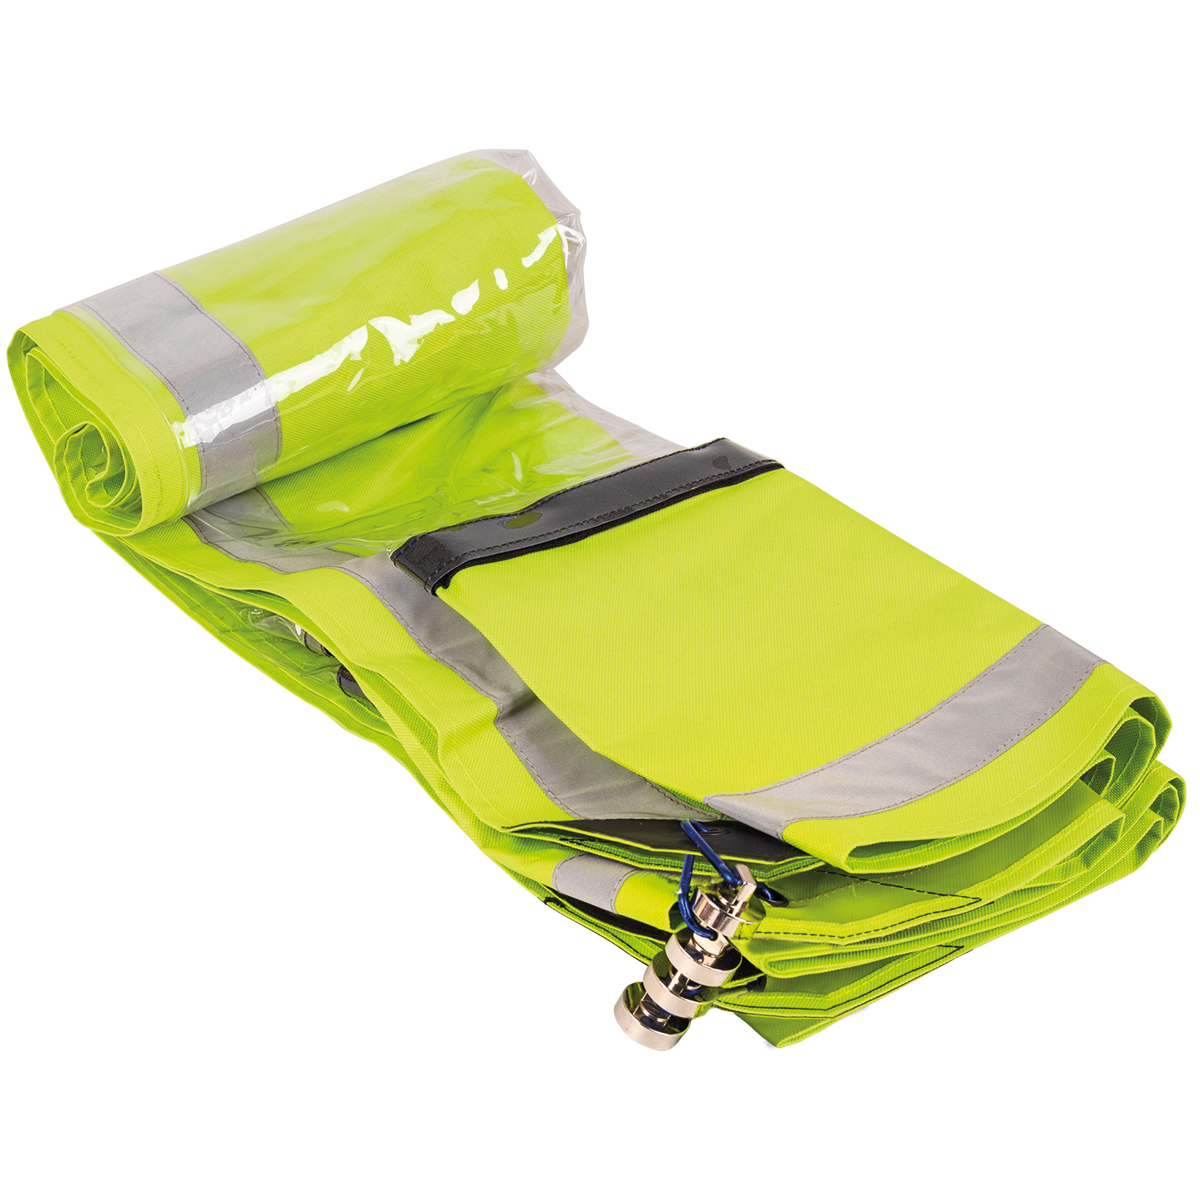 Elite Bags SHIELD - Insassenschutzplane mit großem Sichtfenster für die technische Rettung bei Verkehrsunfällen.